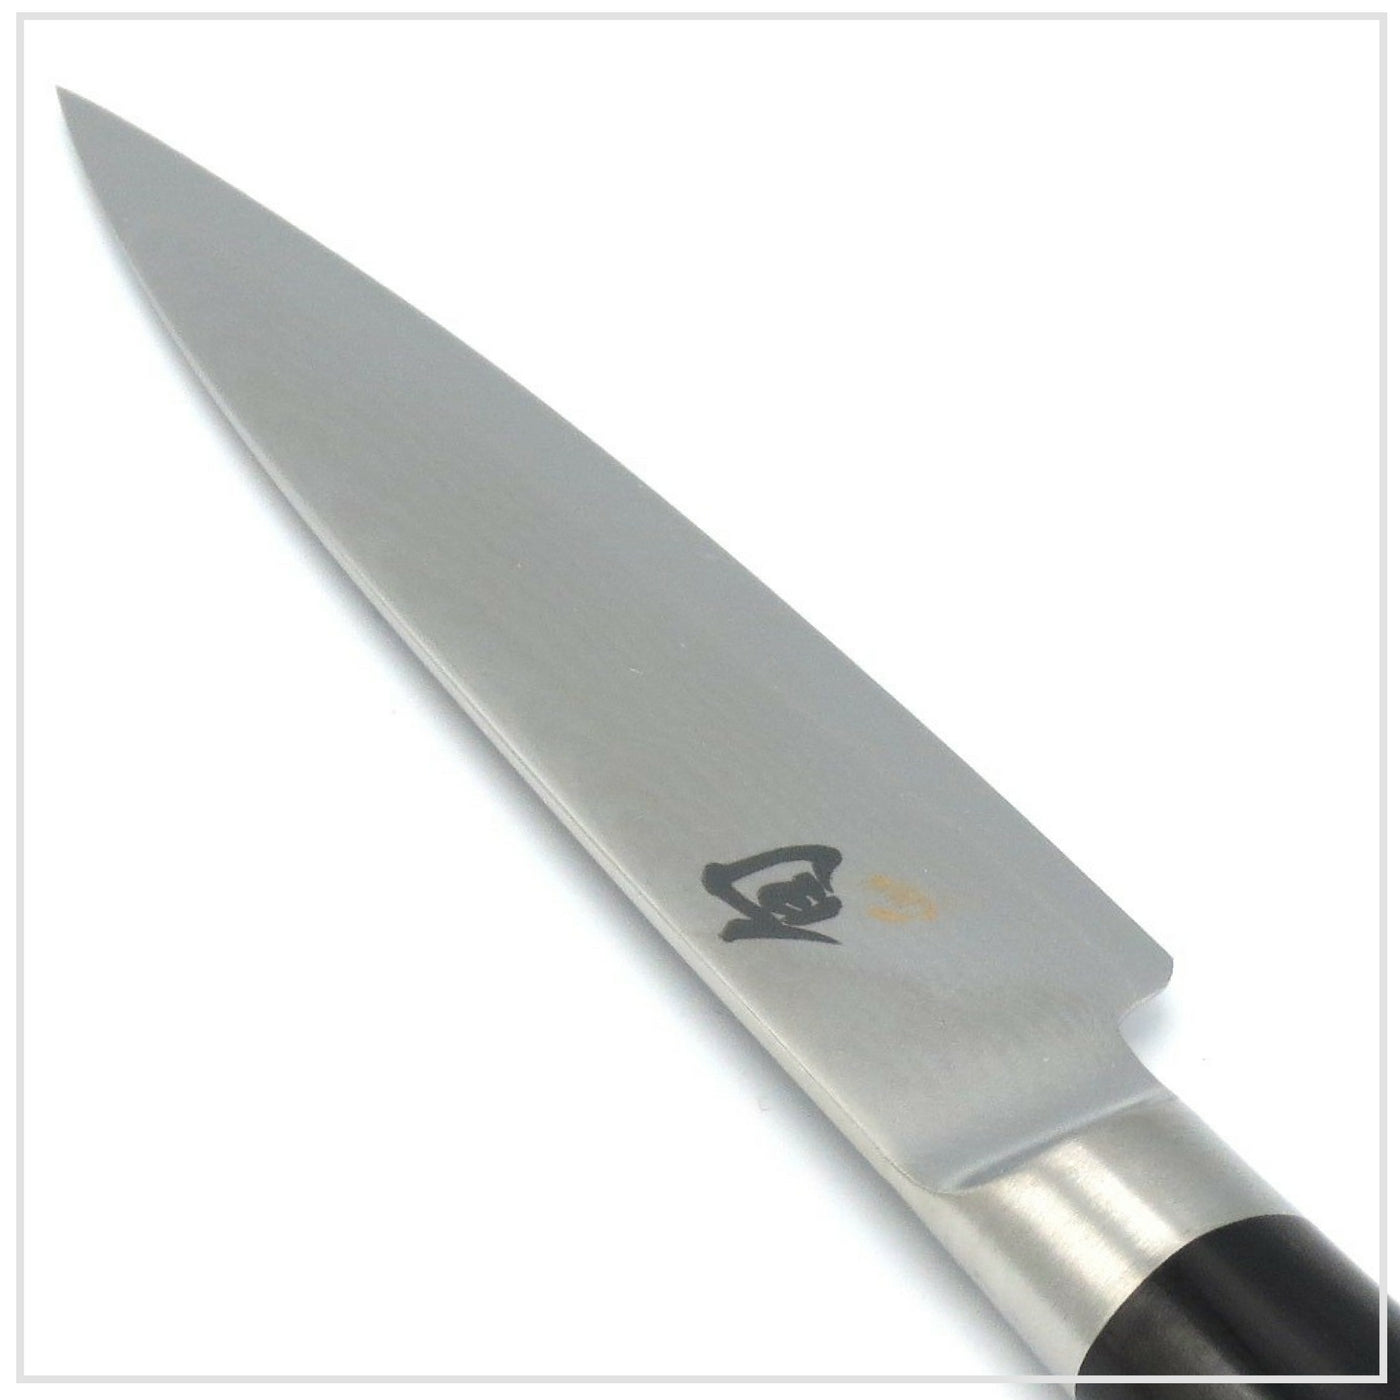 KAI SHUN Paring Knife 9cm